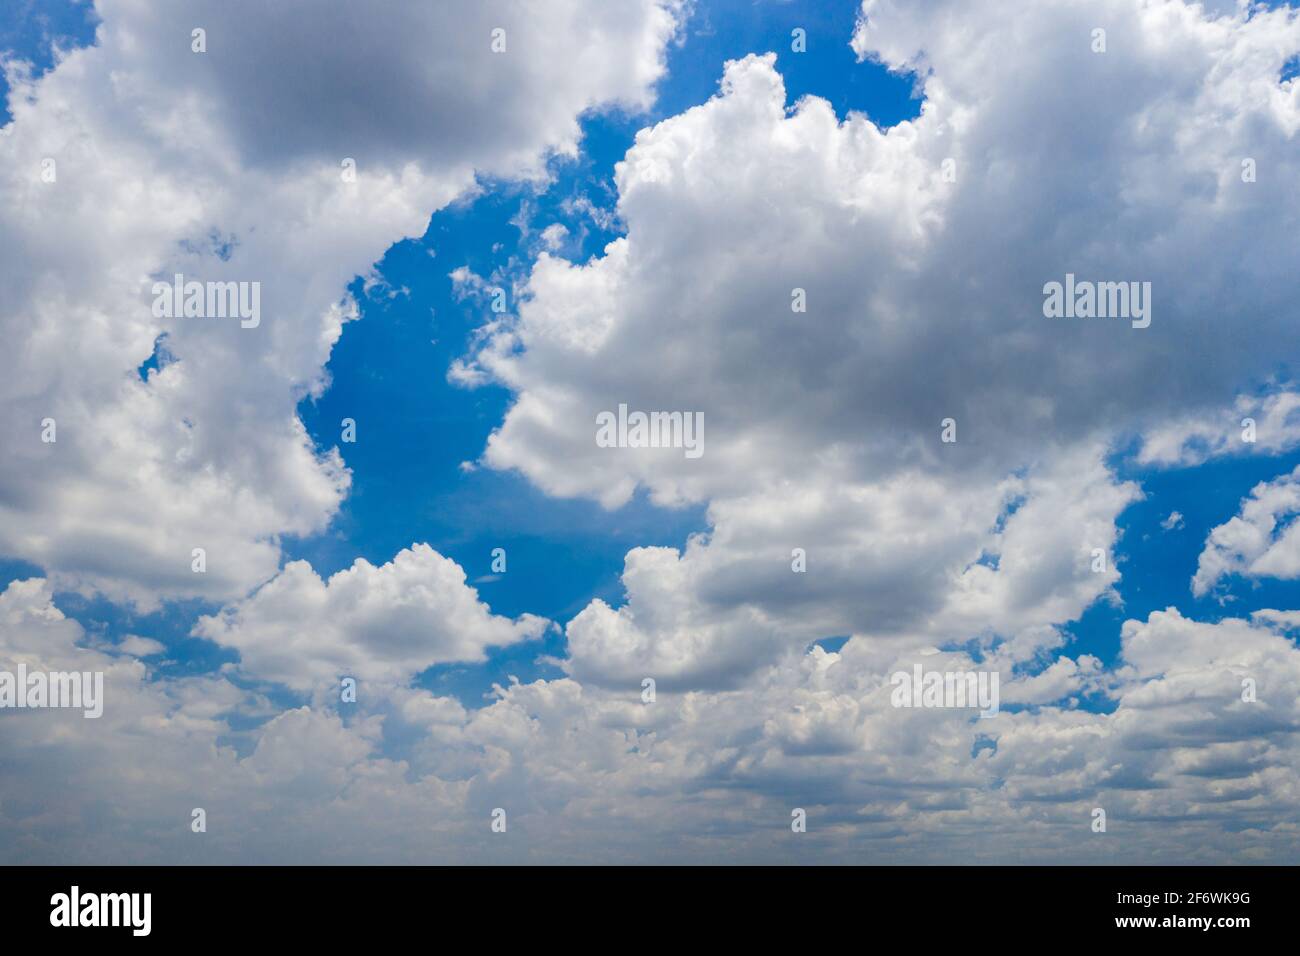 Grande quantité de nuages blancs sur fond bleu ciel Banque D'Images